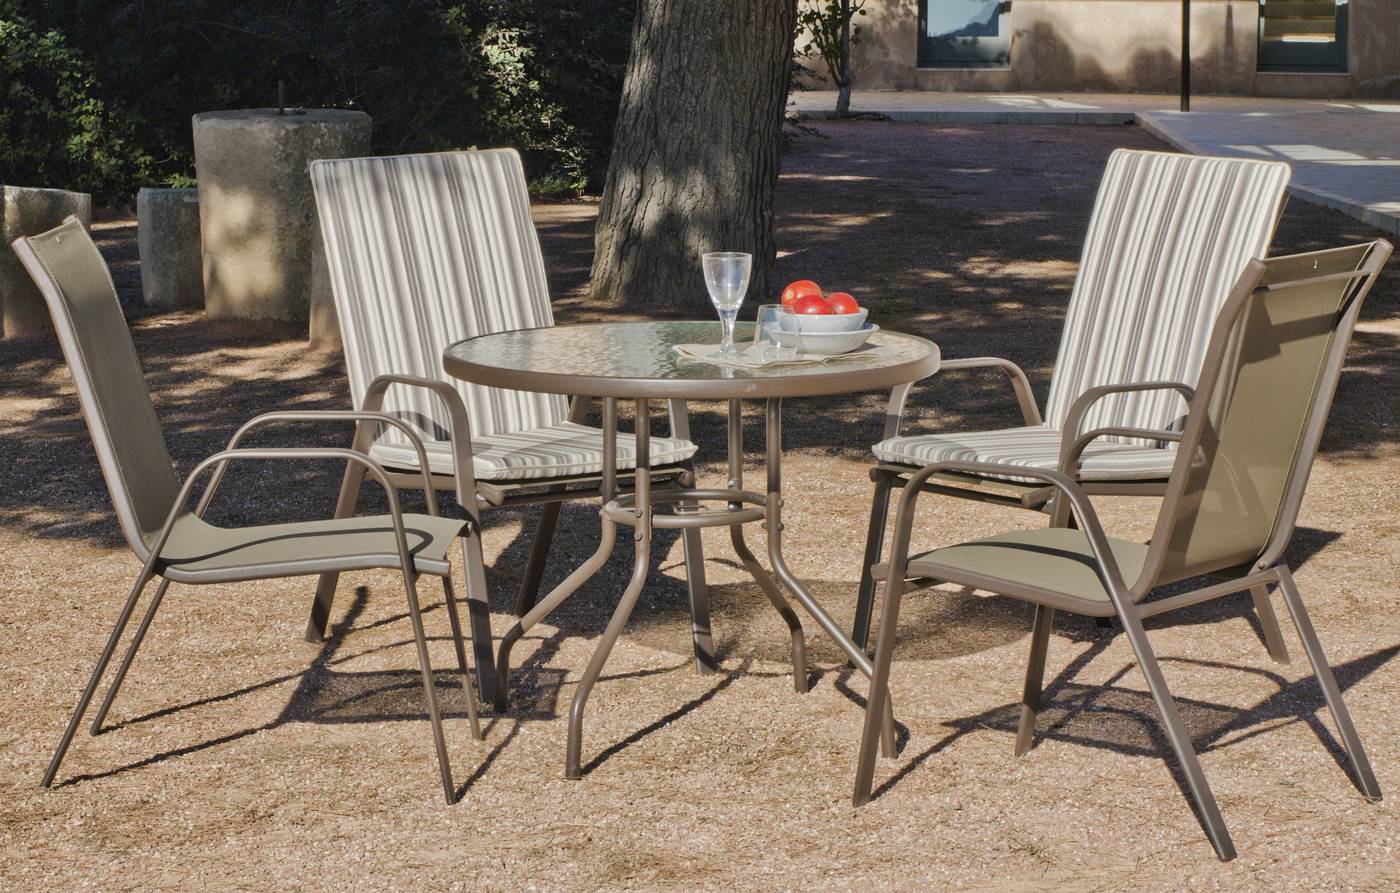 Conjunto de acero color bronce: mesa redonda de 90 cm. Con tapa de cristal templado + 4 sillones apilables de acero y textilen